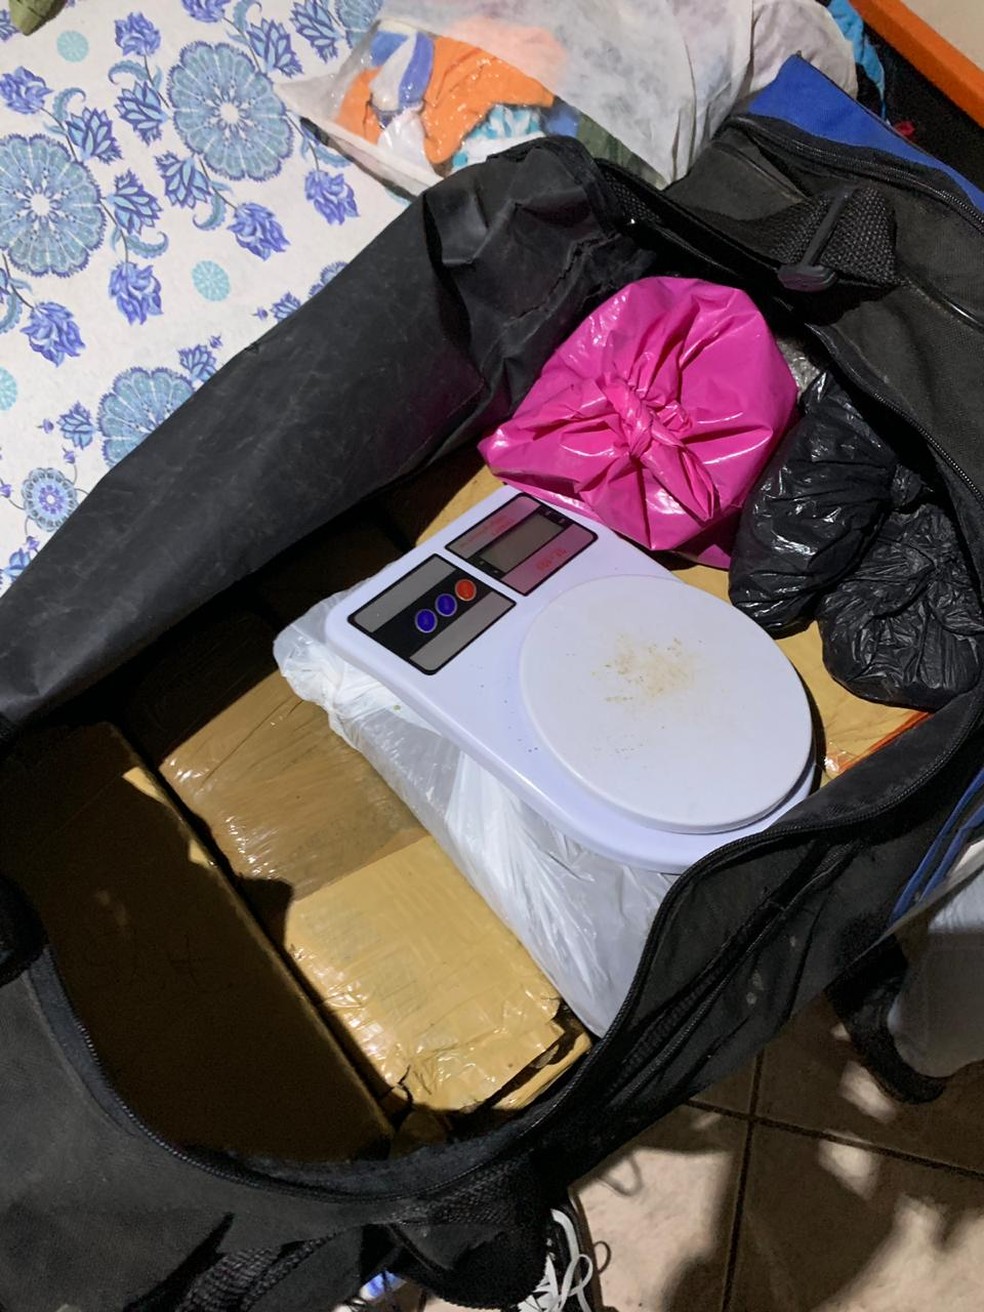 Balança e drogas foram encontradas com suspeitos. — Foto: Polícia Civil/Divulgação